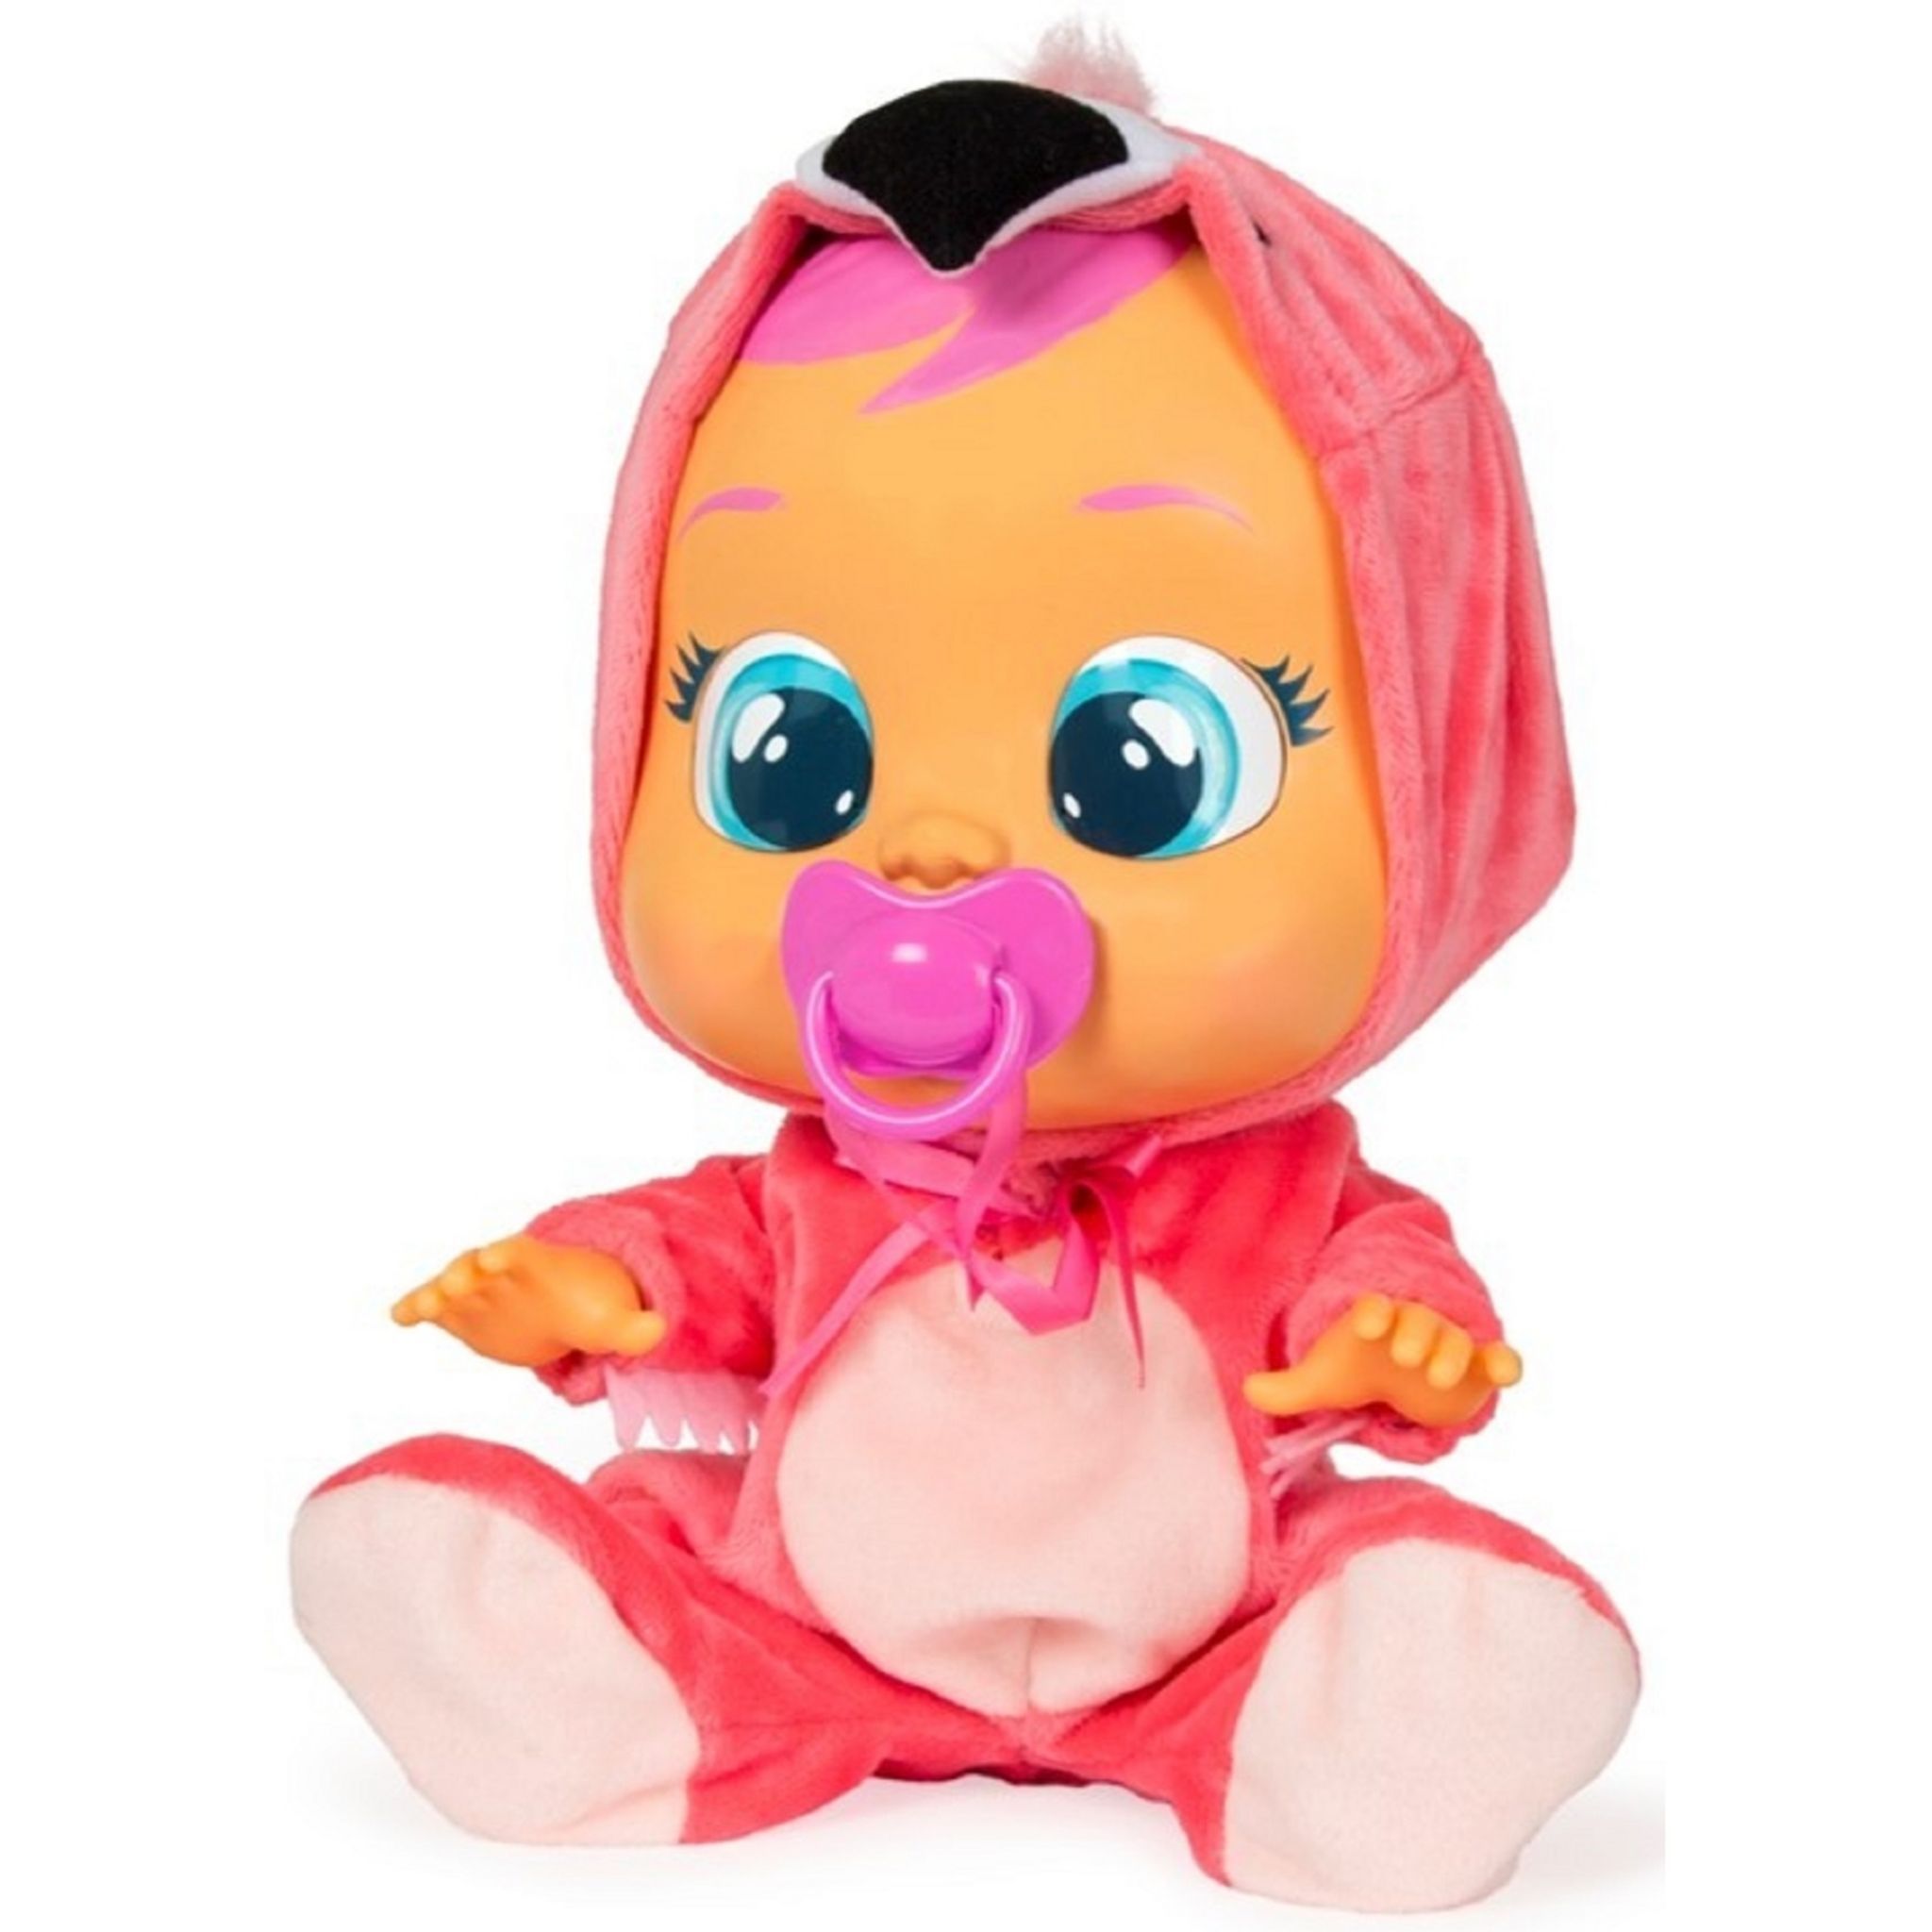 Край бебис новый. Кукла Cry Babies Dressy Фэнси. Кукла Cry Babies Донни. Cry Baby кукла Фламинго. Кукла IMC Toys Cry Babies Fantasy paci House.